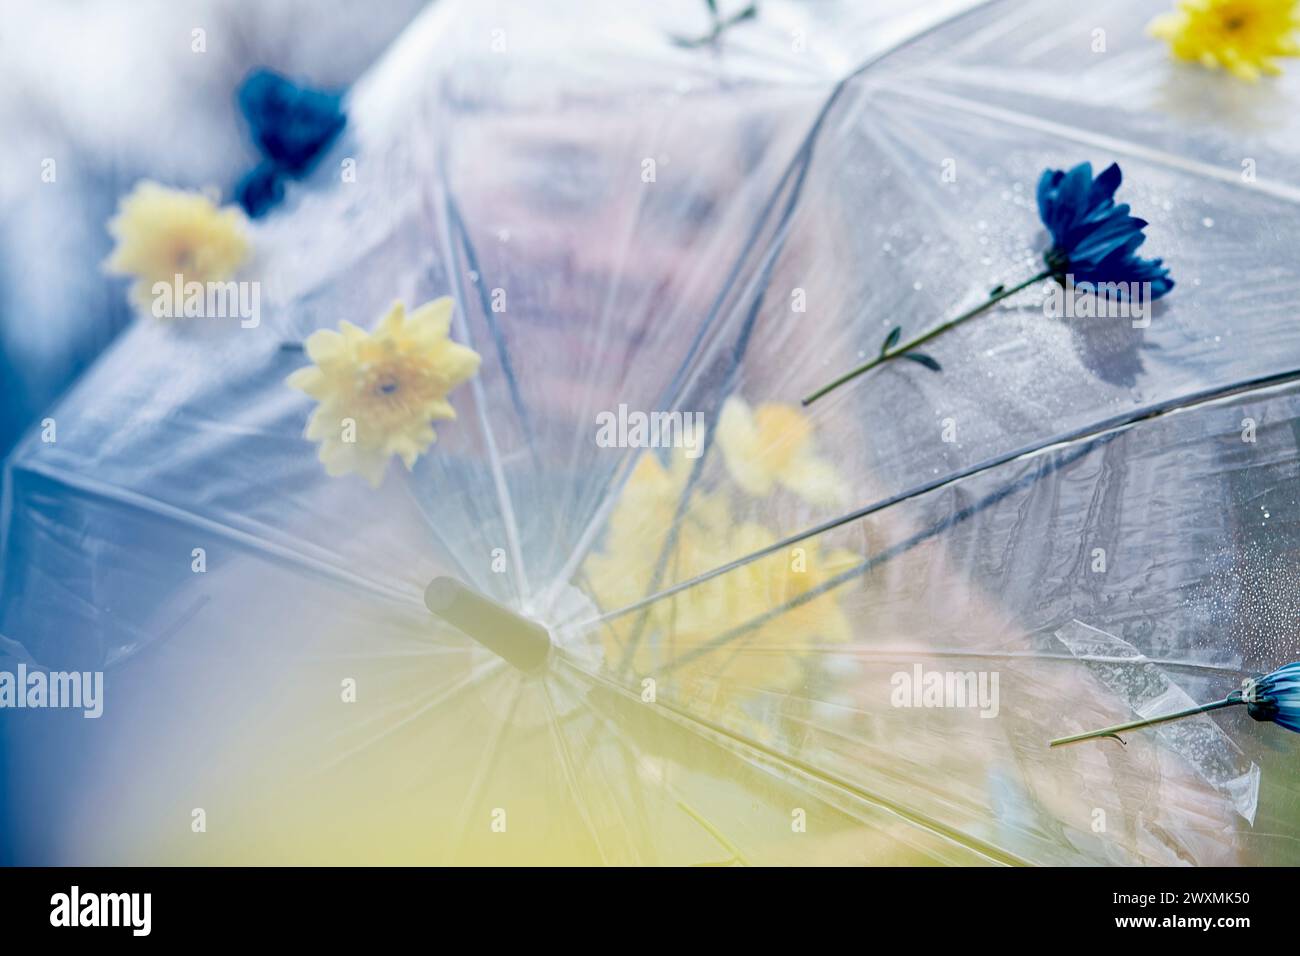 Blumenschirm der Frau an einem nebeligen Tag. Illustrieren von Artikeln über Selbstreflexion und Einsamkeit. Stockfoto